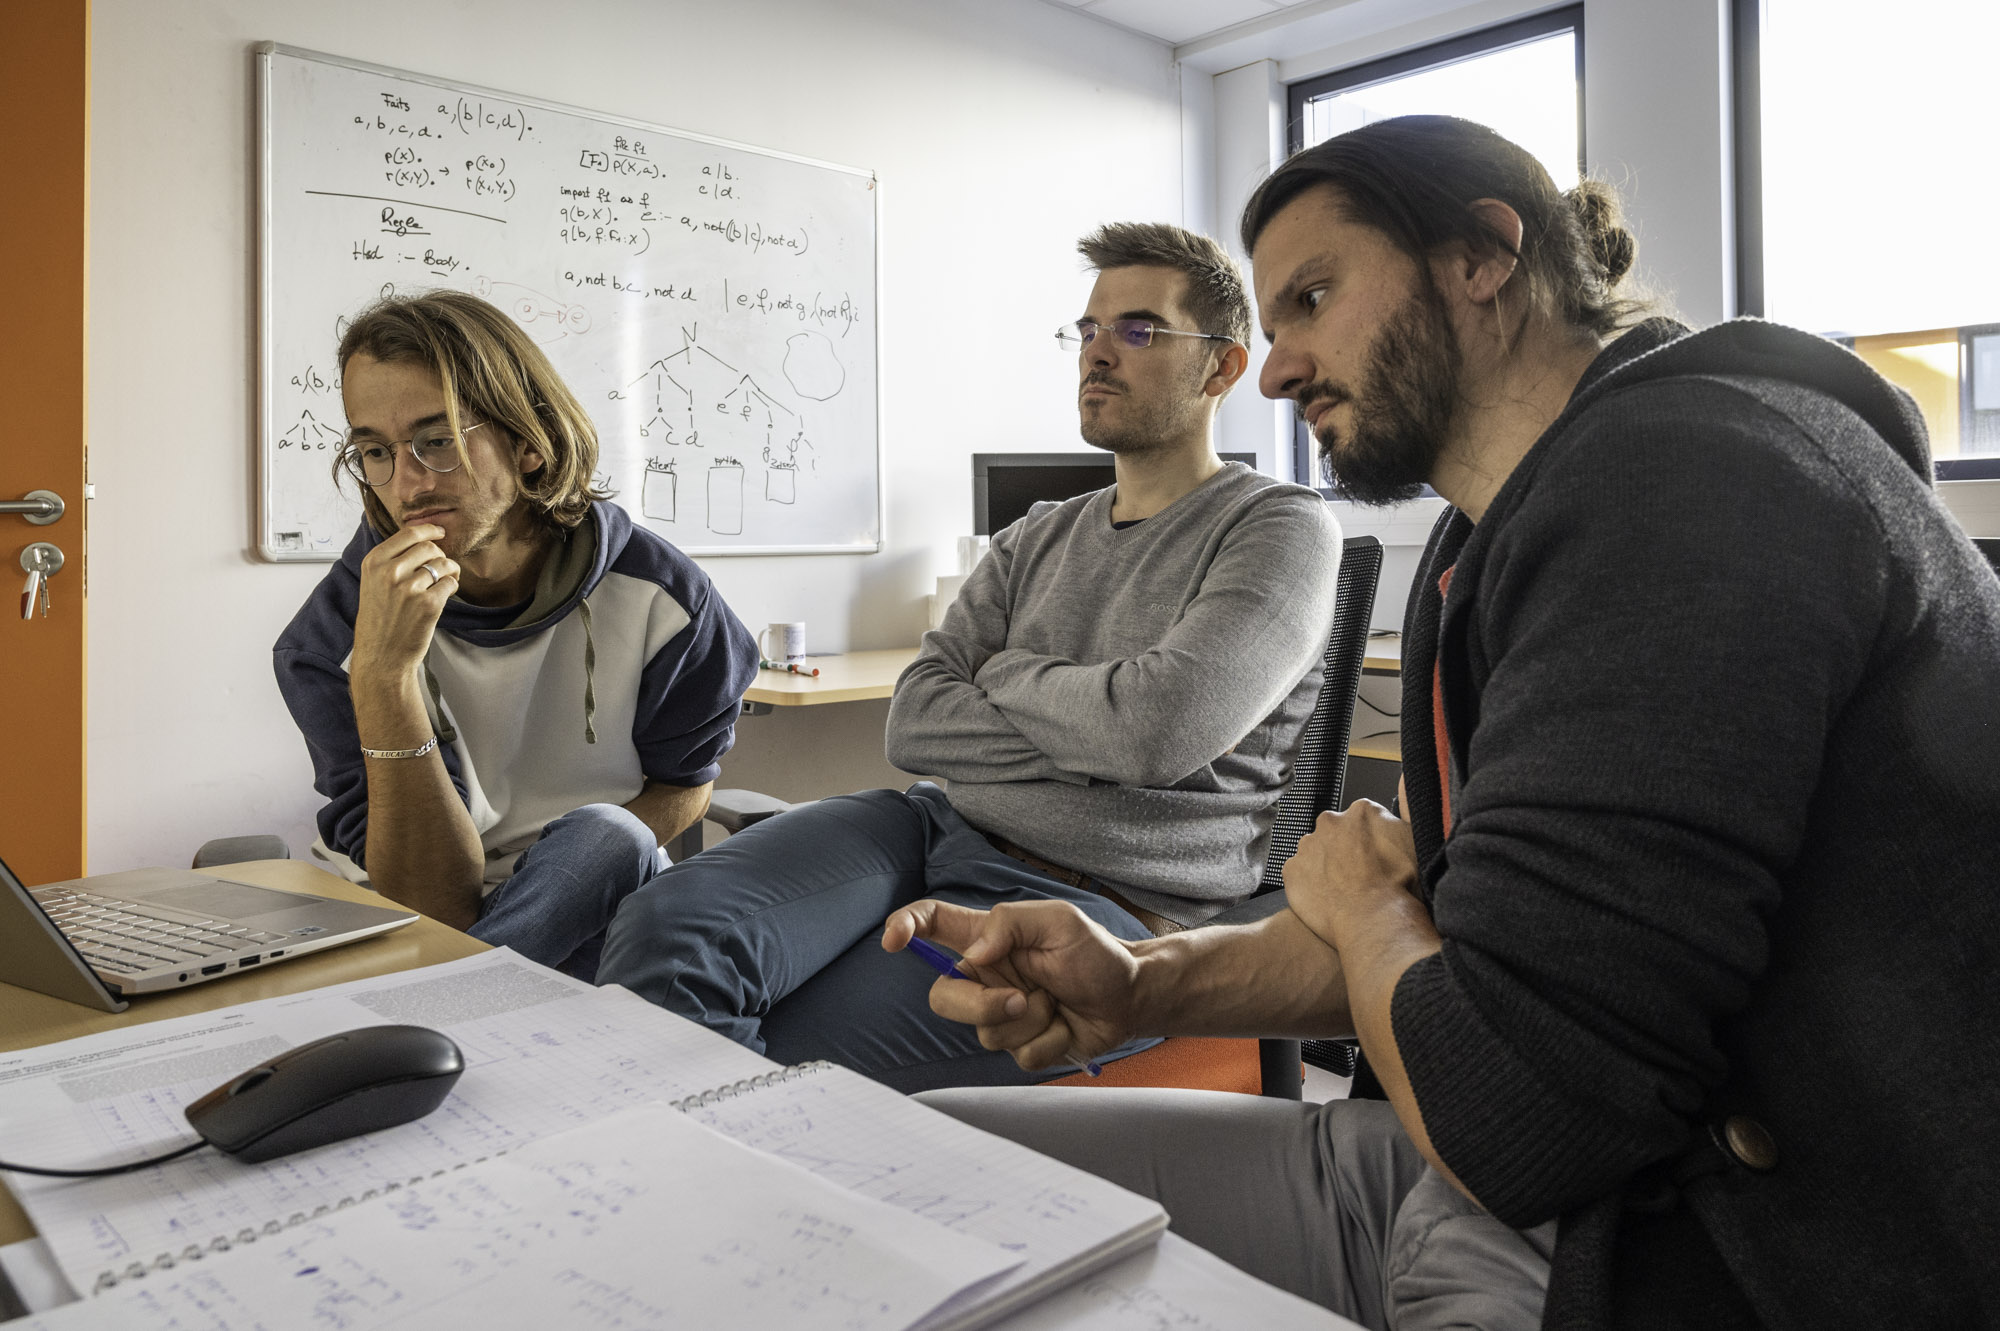 Equipe Boreal, Chercheurs et doctorants pendant un réunion de travail. Reportage photographique sur la recherche en informatique sur le site de Inria à Montpellier.